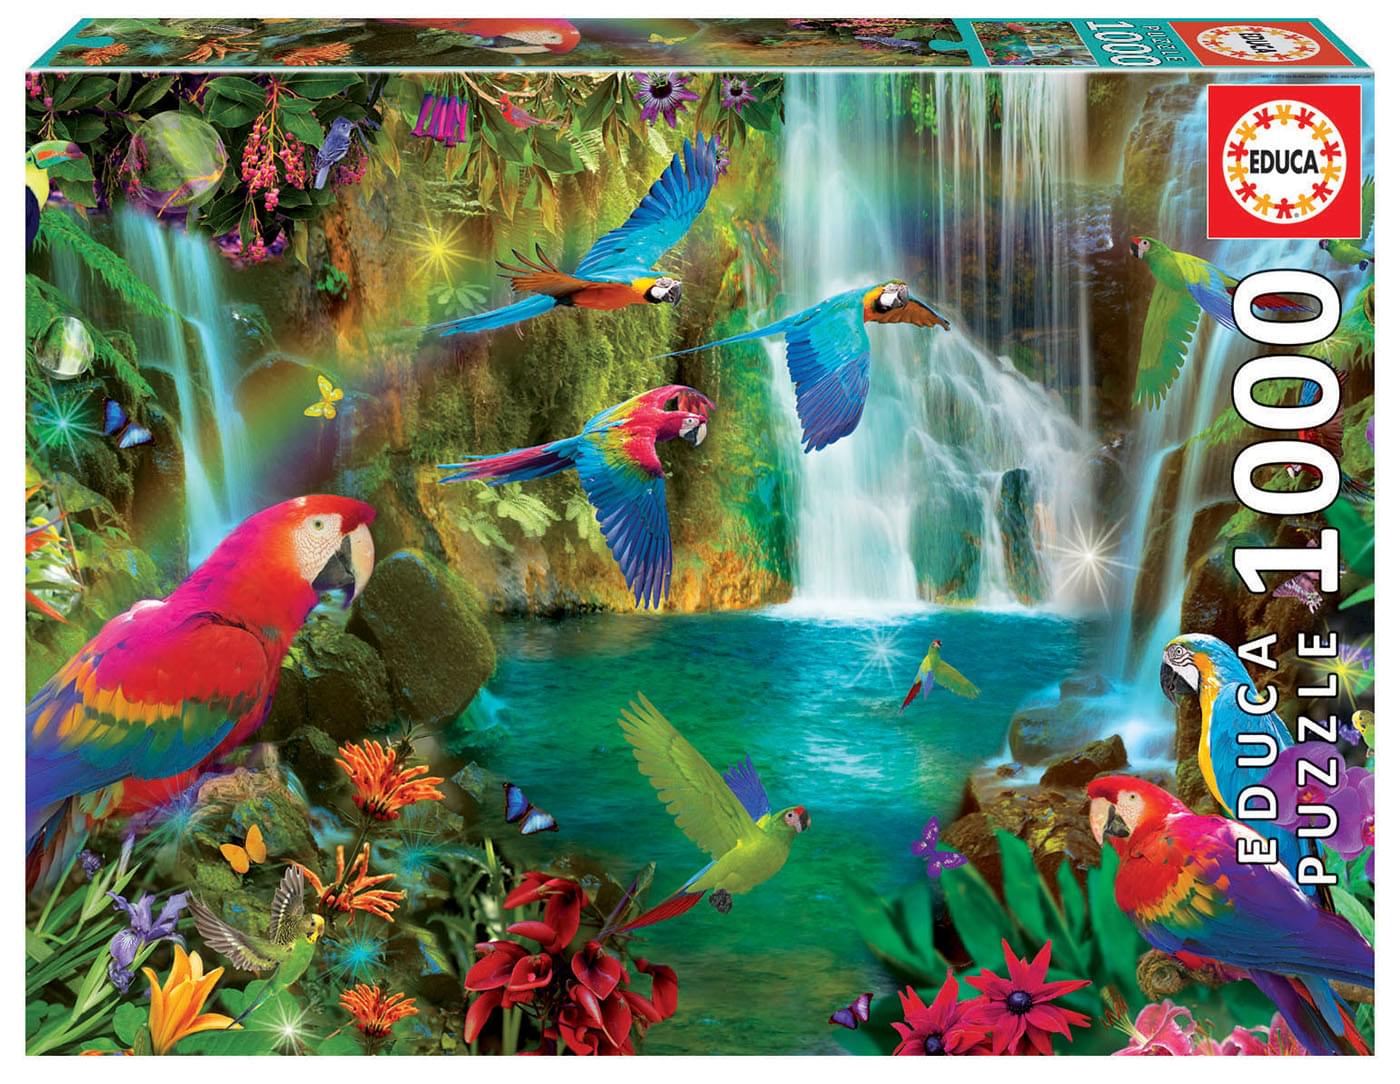 Tropical Parrots 1000 Piece Jigsaw Puzzle